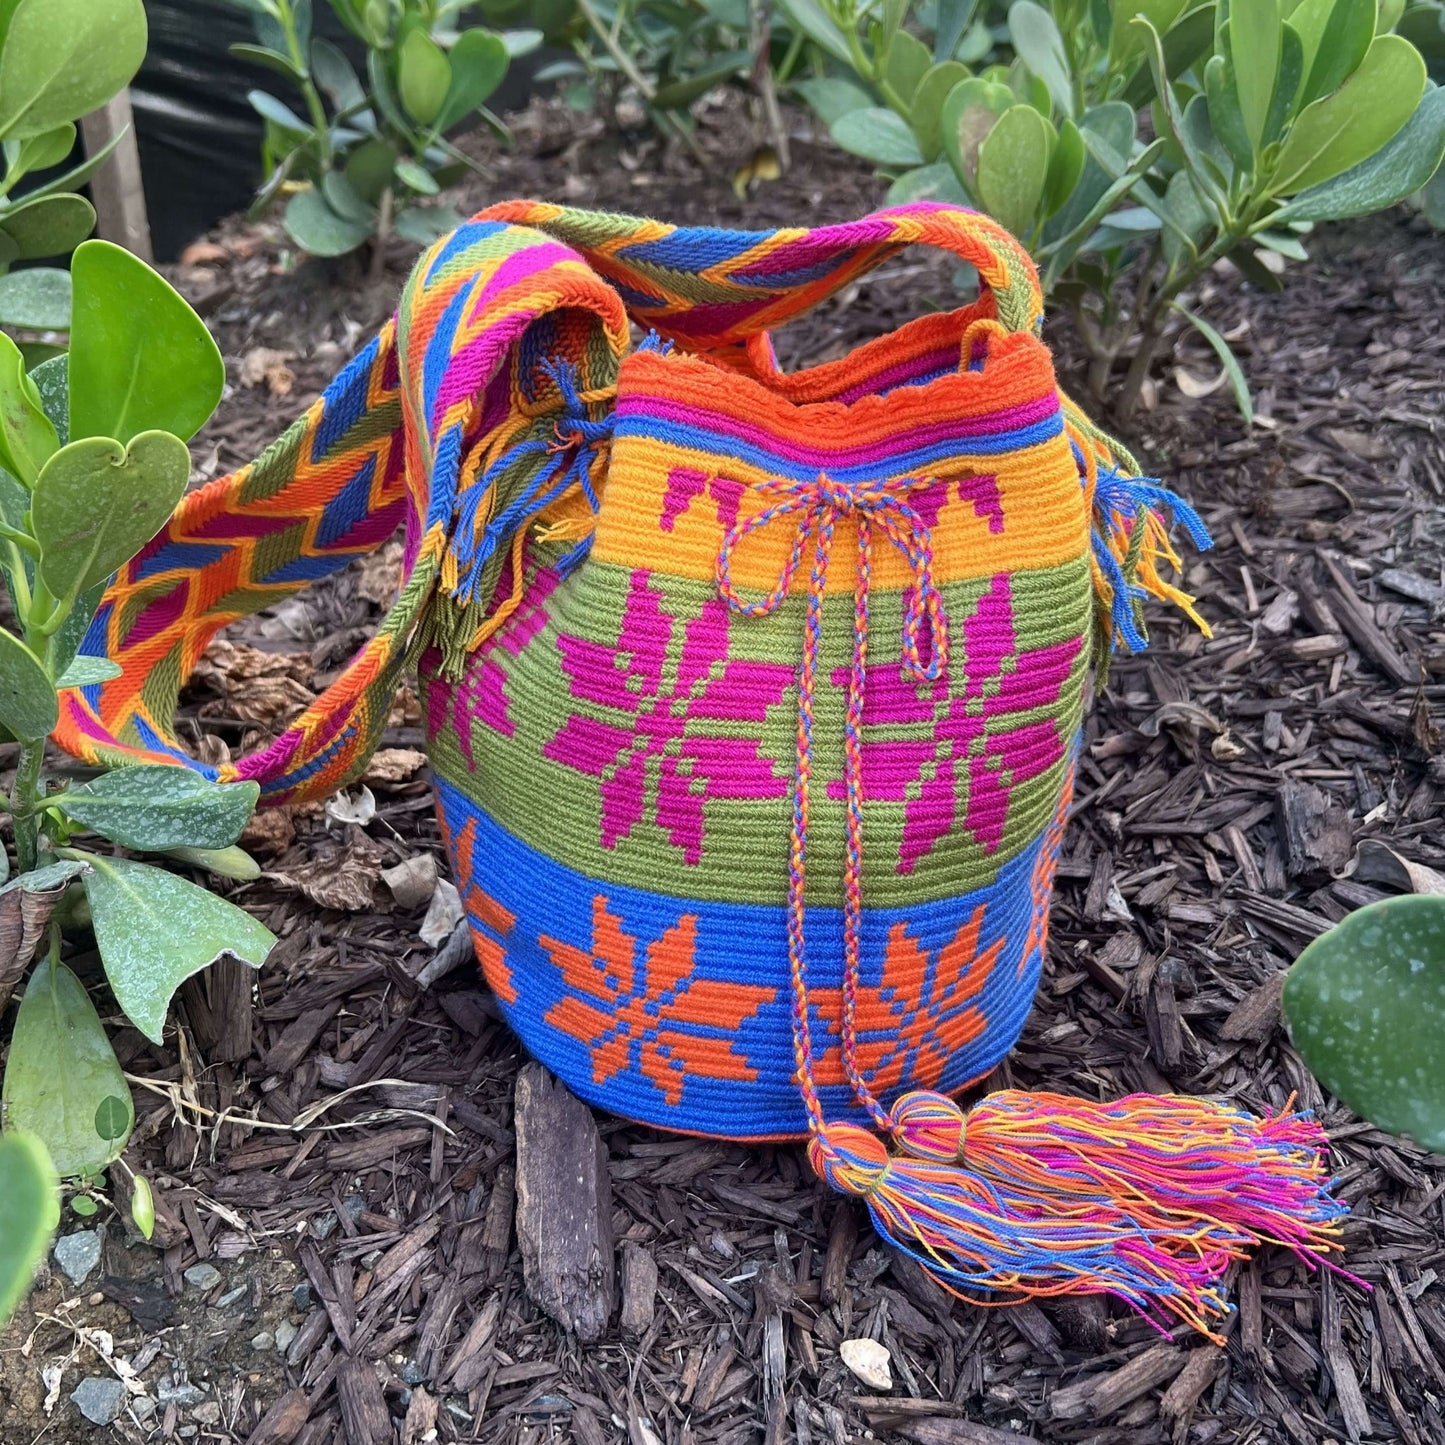 Jardín con Colorido Bolso Tejido por Indígenas de la Tribu Wayúu en Colombia/Pololena & Co.